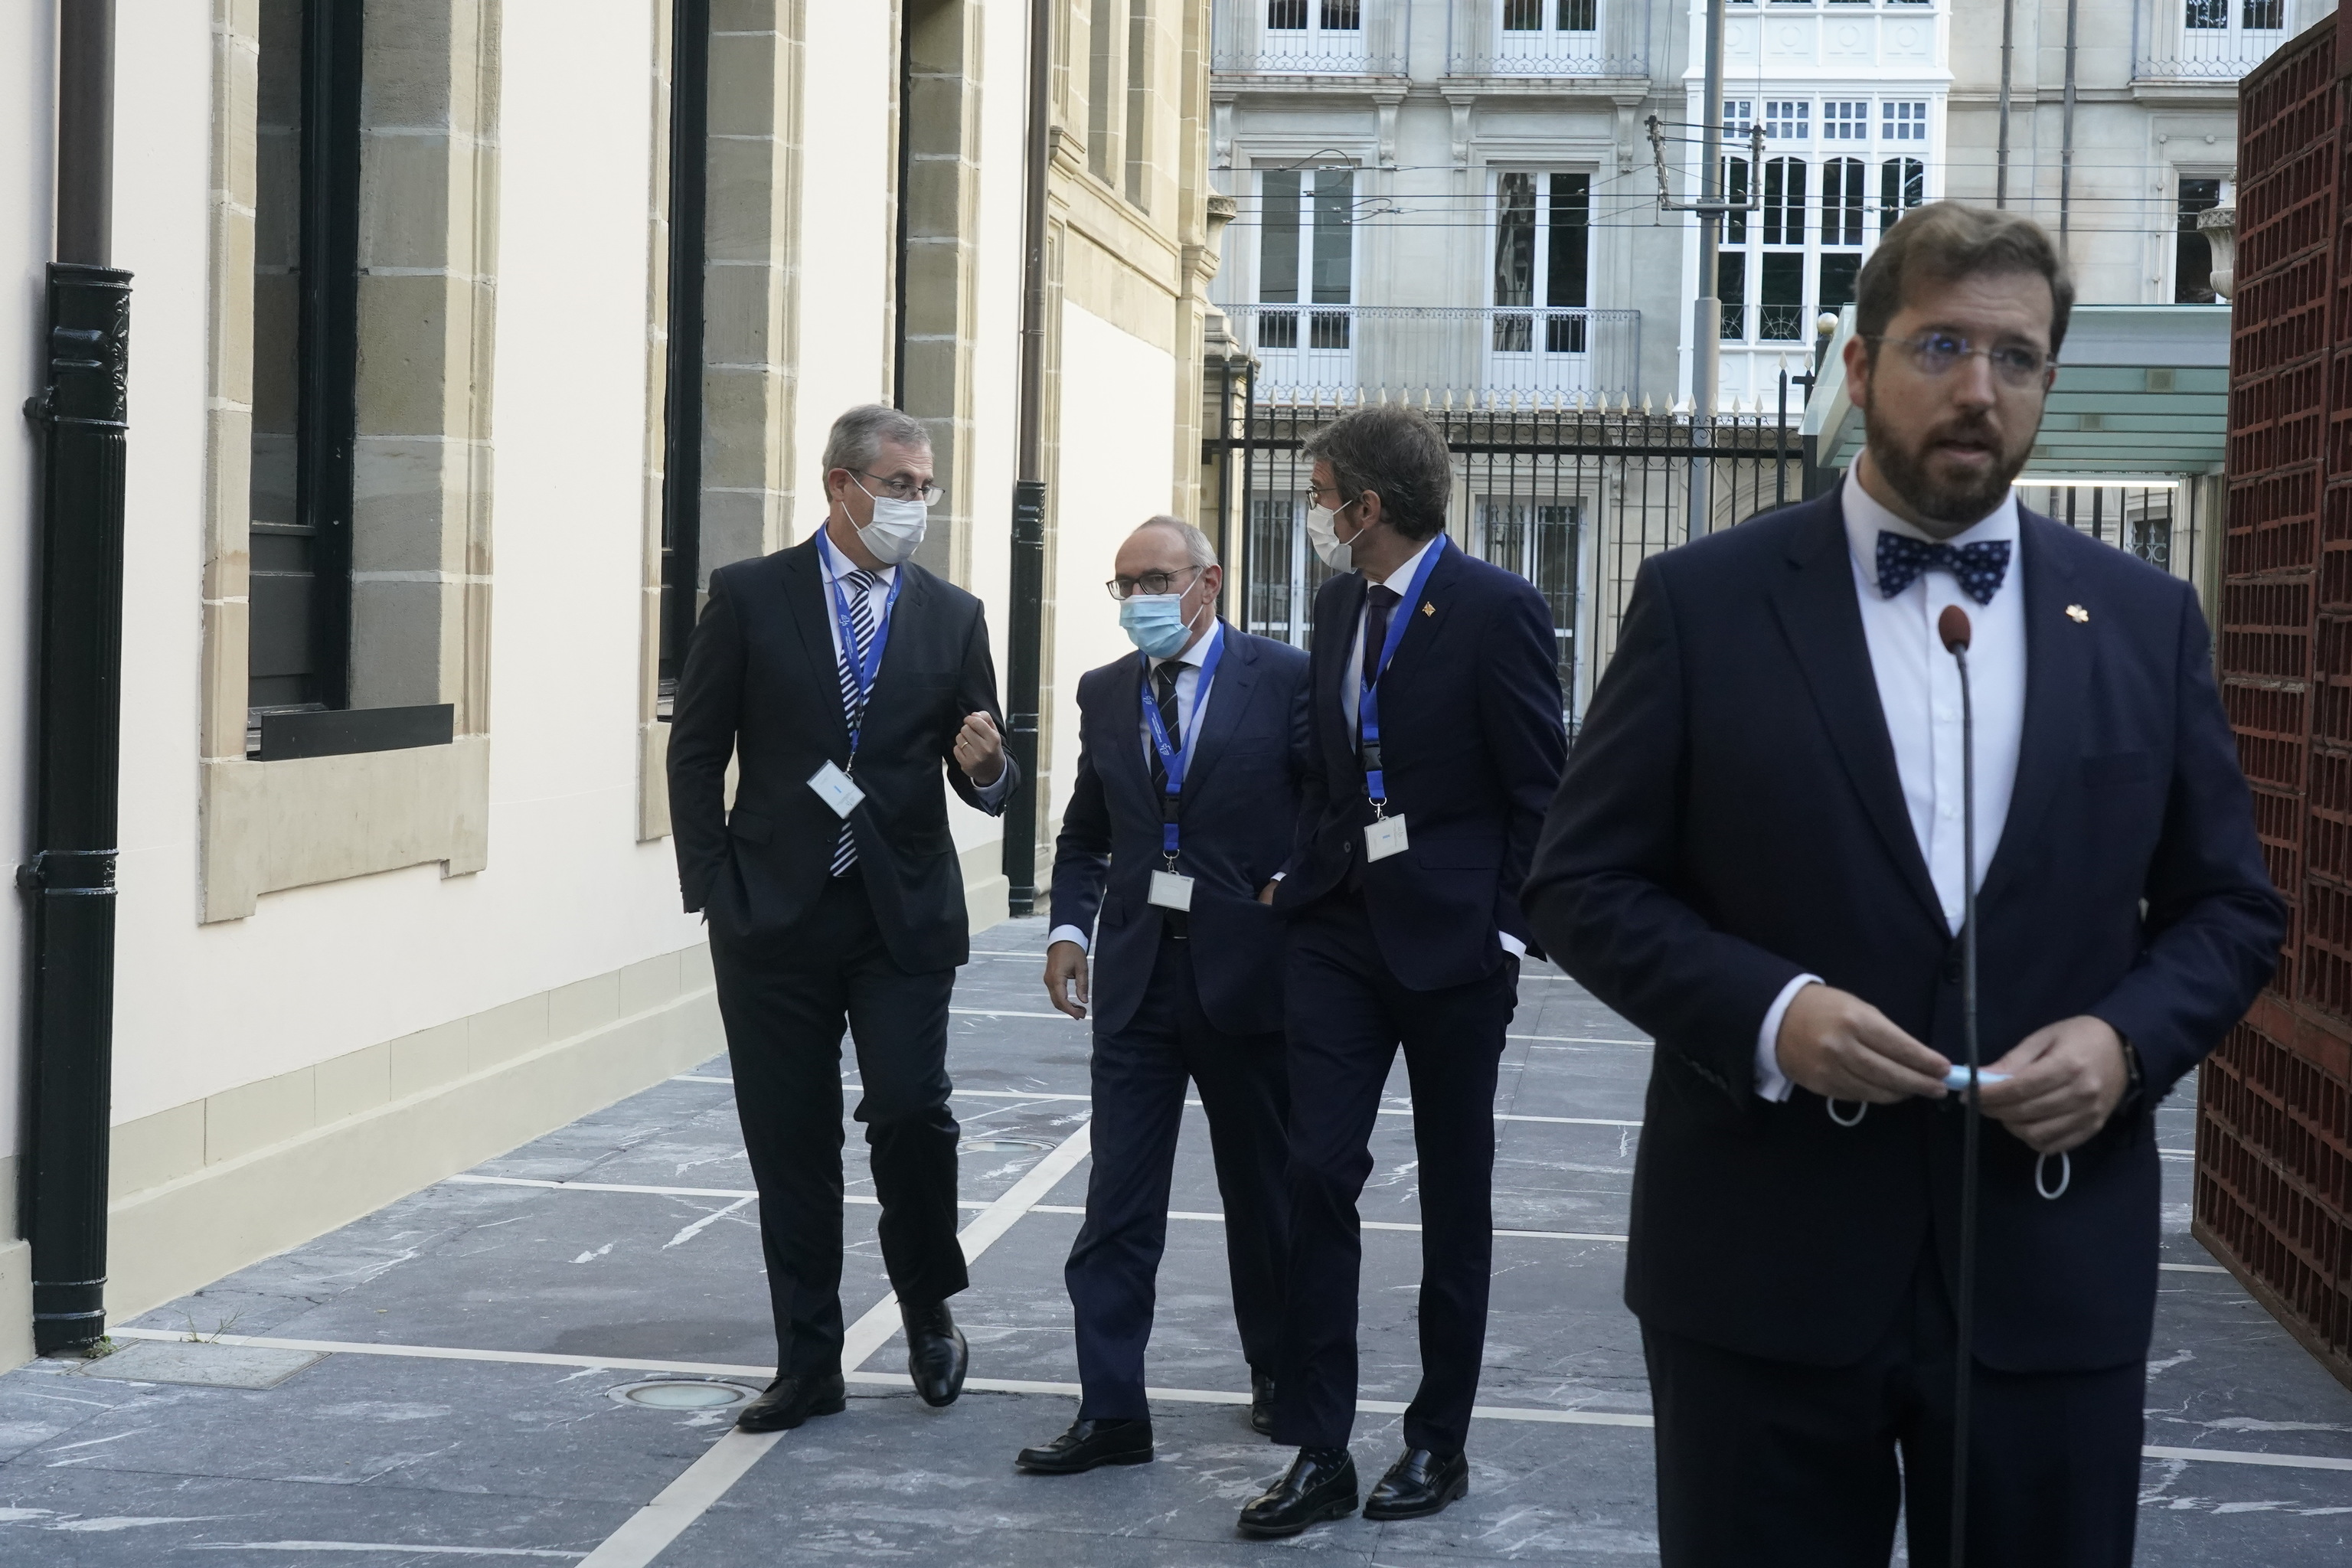 El parlamentario Luis Gordillo realiza declaraciones en el Parlamento Vasco mientras acceden a la Cámara Markel Olano, Ramiro González y Gorka Urtaran.